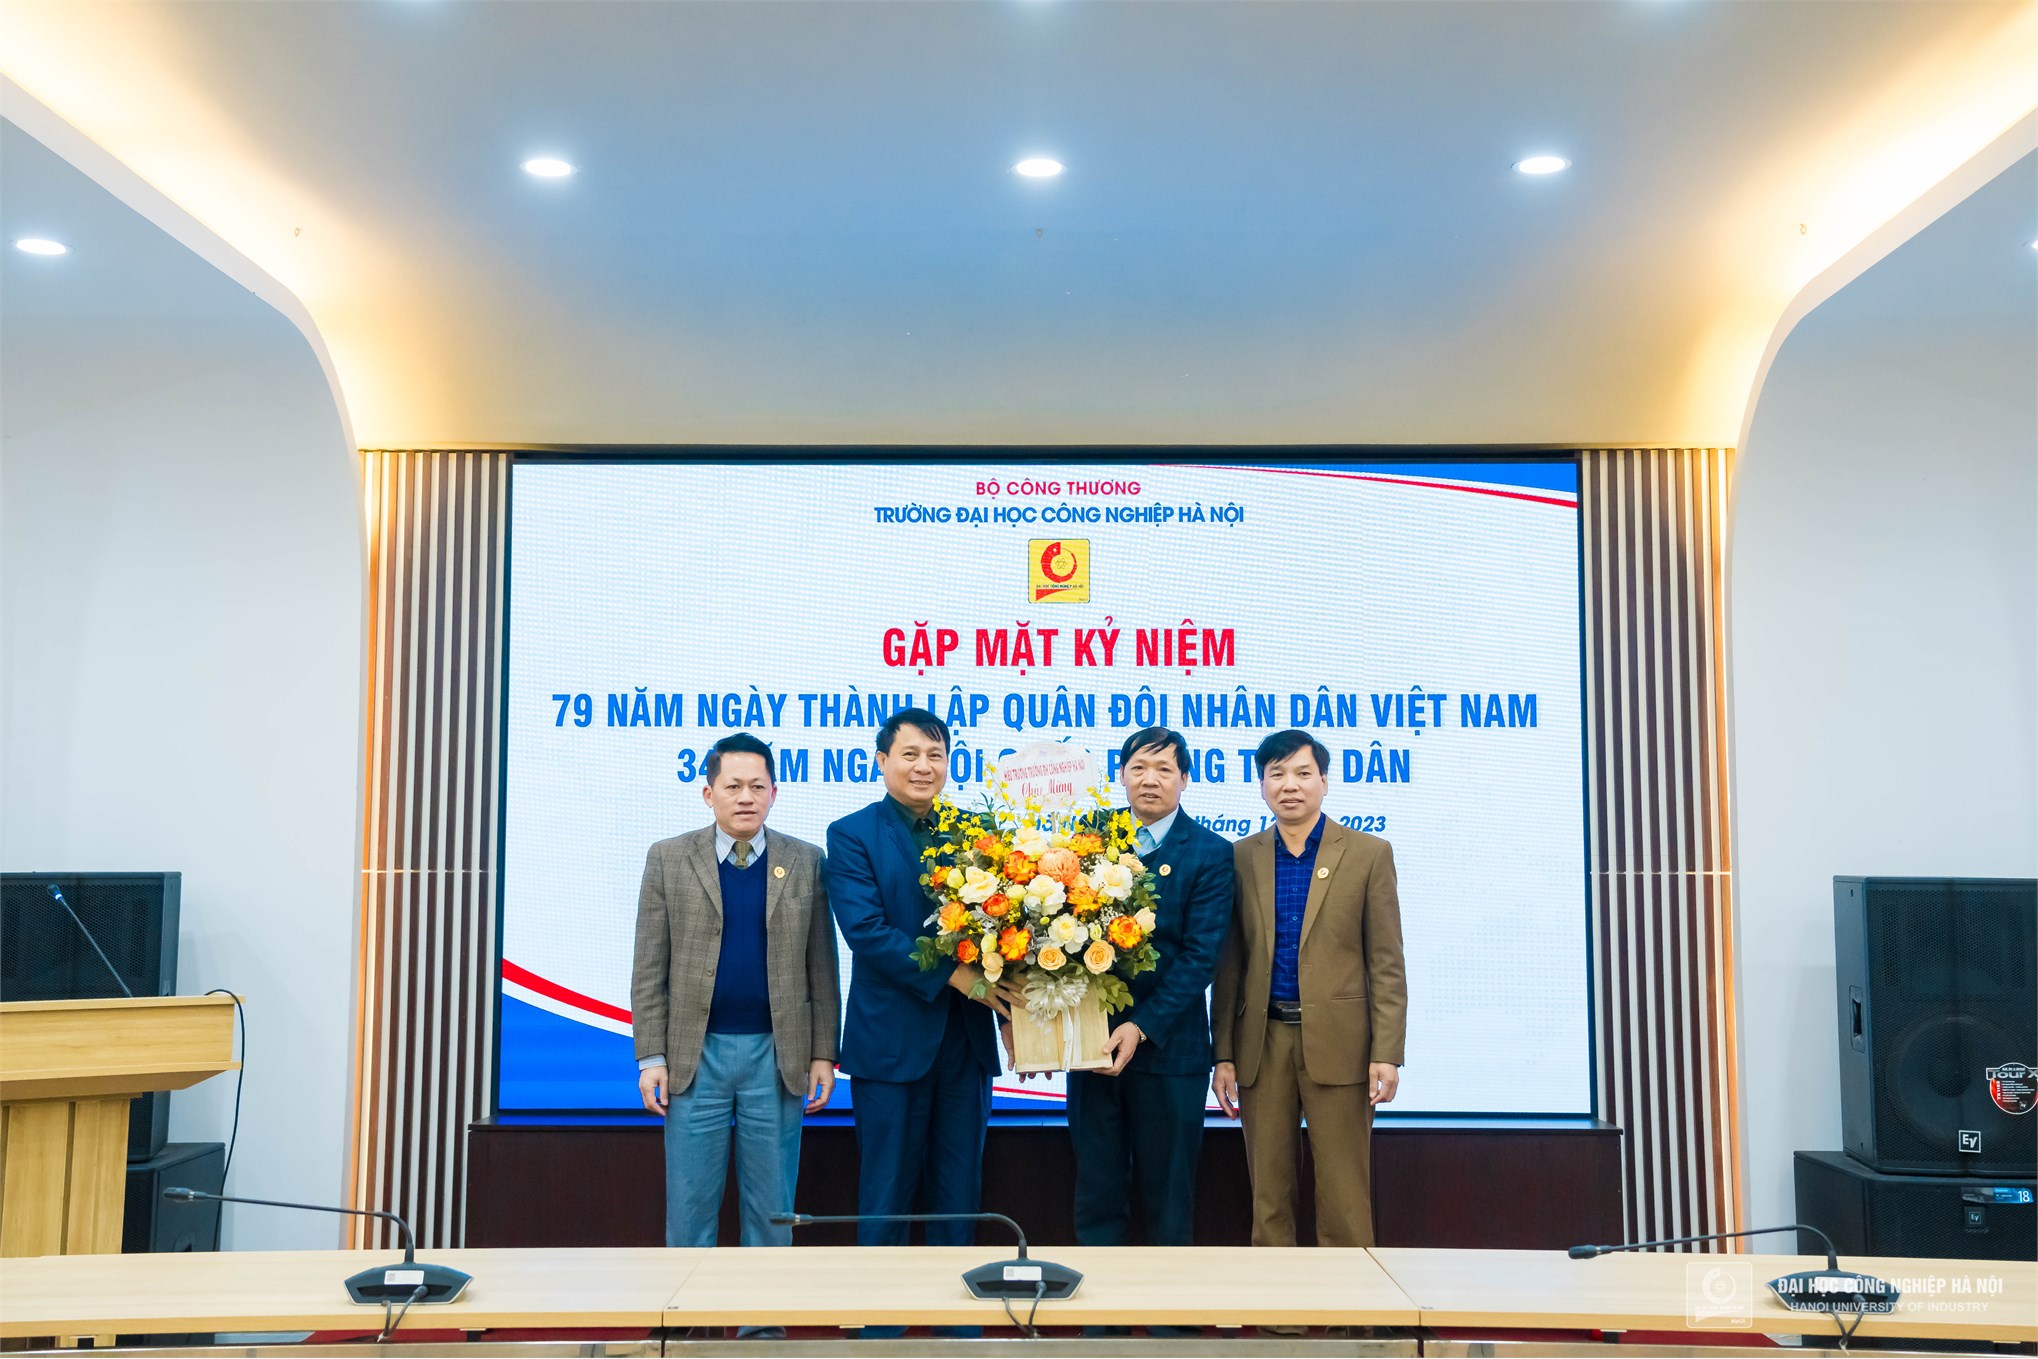 Gặp mặt cựu chiến binh, cựu quân nhân Trường Đại học Công nghiệp Hà Nội